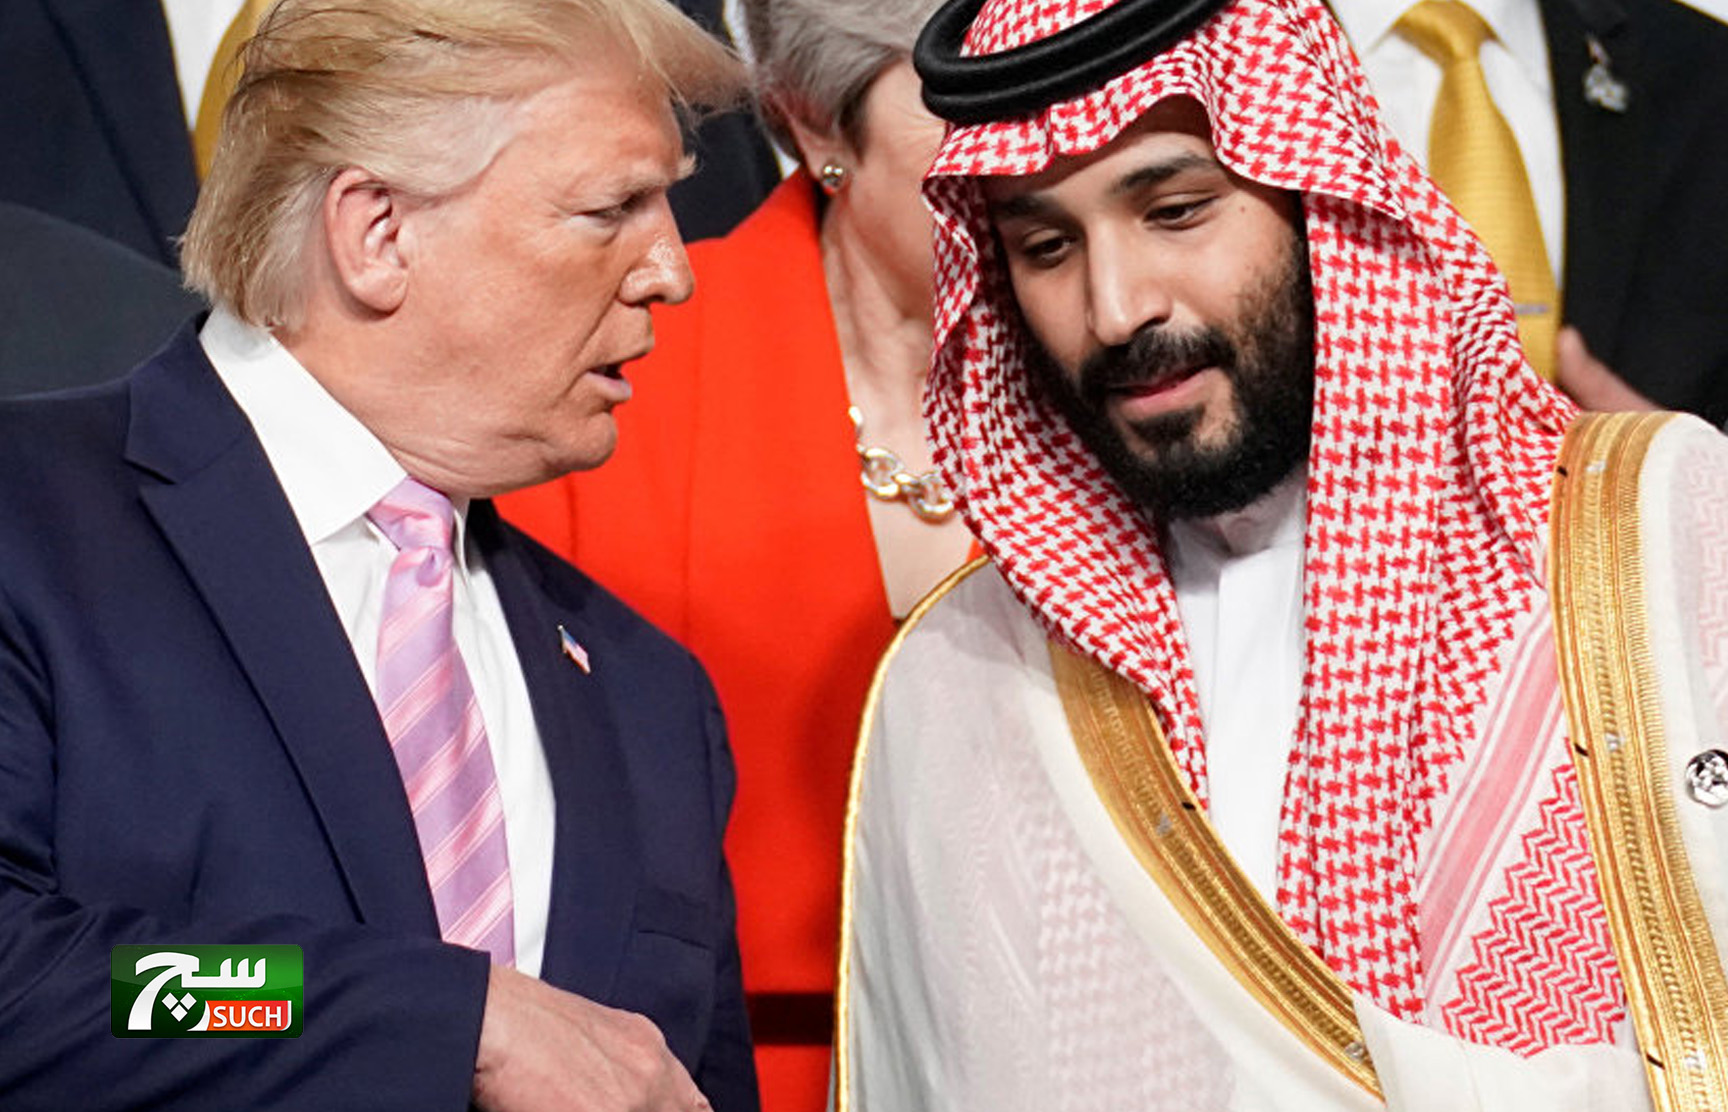 ترامب يقول إنه يقدر مشتريات السعودية من المعدات العسكرية الأمريكية